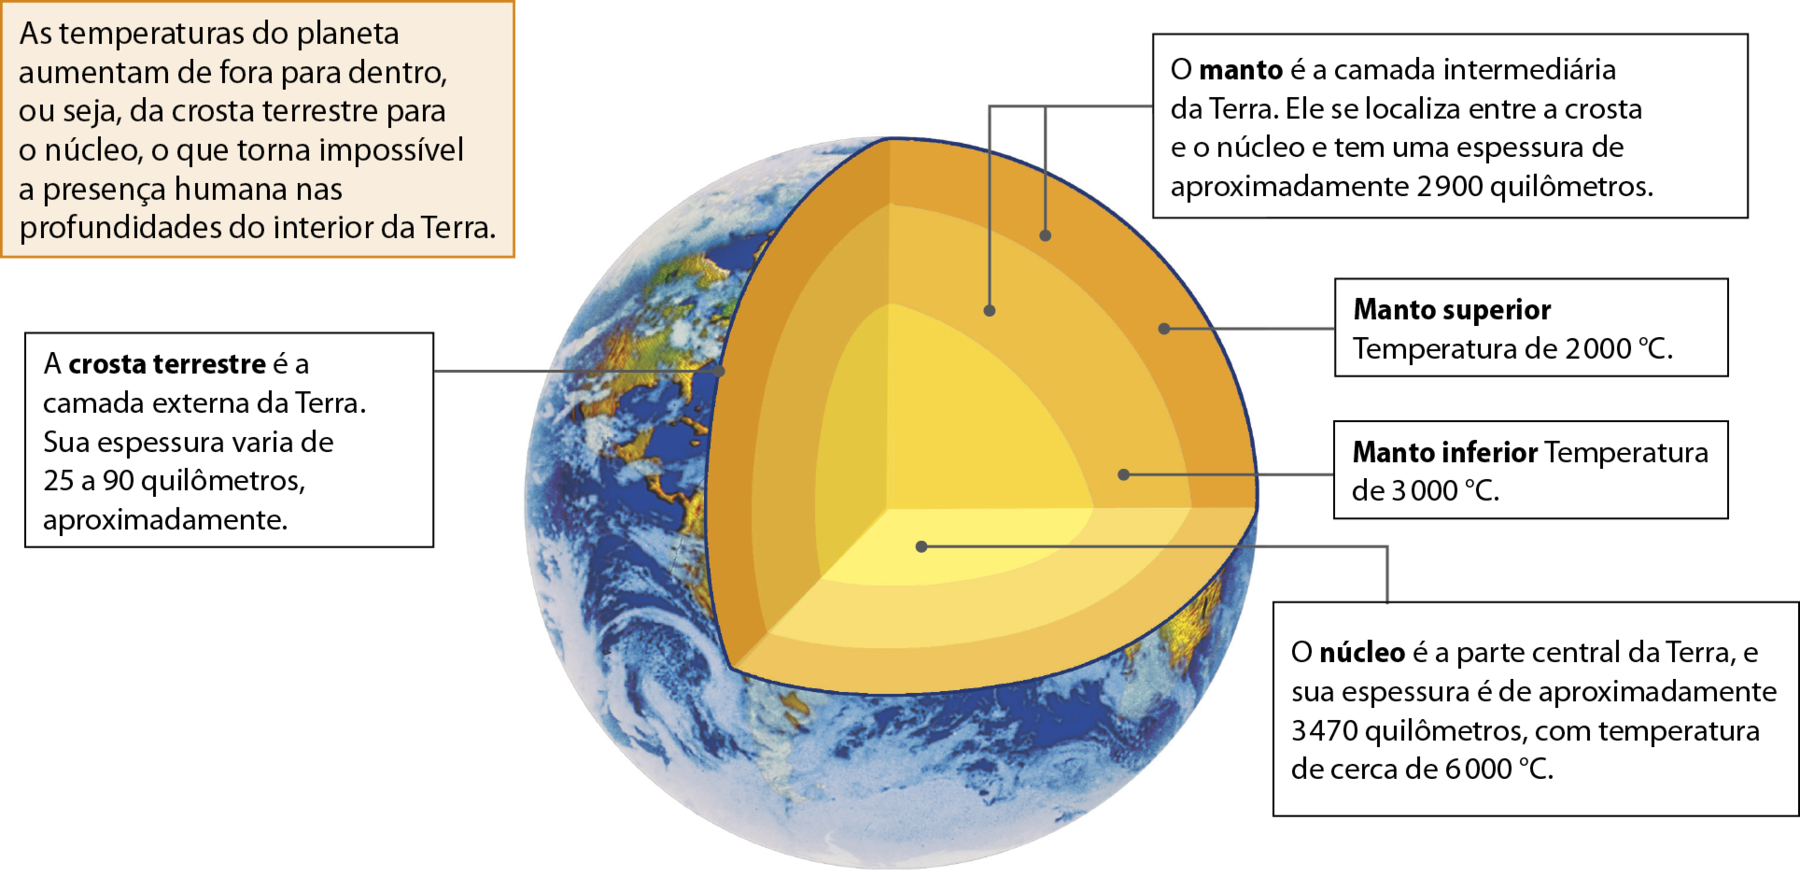 Ilustração. A Terra por dentro. Representação do planeta Terra com um corte triangular até o seu centro, exibindo as suas camadas internas. A primeira é a crosta terrestre, representada por uma linha fina e azul no corte. Em seguida, a camada do manto é dividida em duas tonalidades de laranja, sendo o manto externo mais fino e representado por uma tonalidade de laranja mais intensa, e o manto inferior mais próximo ao núcleo, com maior espessura e representado por uma tonalidade de laranja mais clara. Por fim, o núcleo está ao centro do esquema, e possui a cor amarela. Os seguintes textos explicativos estão relacionados à ilustração: As temperaturas do planeta aumentam de fora para dentro, ou seja, da crosta terrestre para o núcleo, o que torna impossível a presença humana nas profundidades do interior da Terra. A crosta terrestre é a camada externa da Terra. Sua espessura varia de 25 a 90 quilômetros, aproximadamente. O manto é a camada intermediária da Terra. Ele se localiza entre a crosta e o núcleo e tem uma espessura de aproximadamente 2.900 quilômetros. Manto superior: Temperatura de 2.000 graus celsius. Manto inferior: Temperatura de 3.000 graus celsius. O núcleo é a parte central da Terra, e sua espessura é de aproximadamente 3.470 quilômetros, com temperatura de cerca de 6.000 graus celsius.